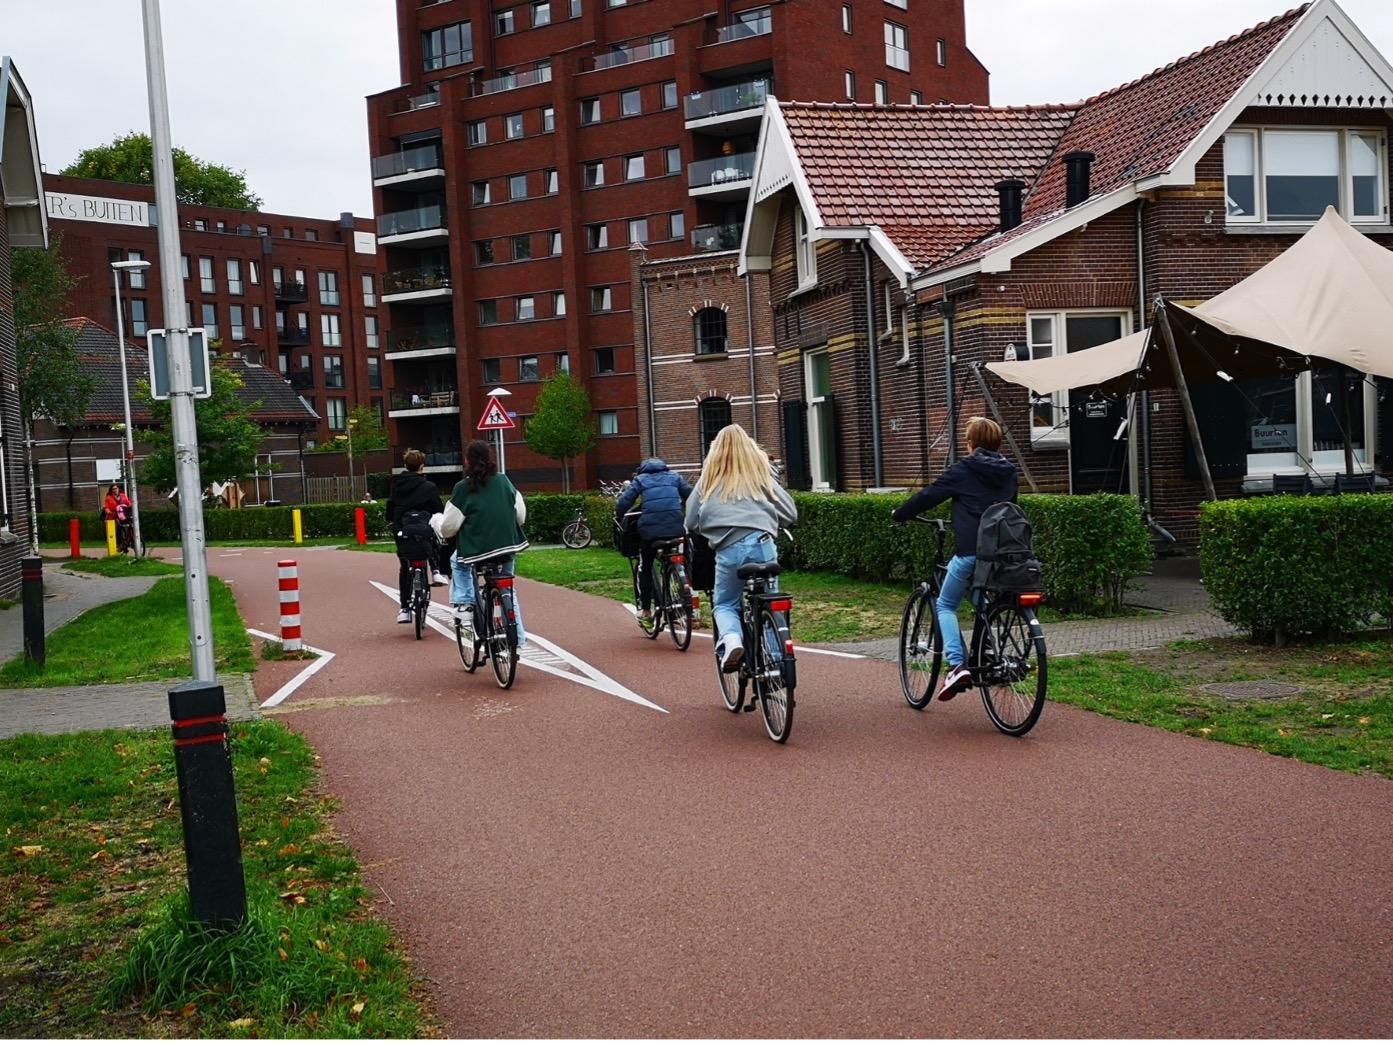 Les aménagements cyclables, une nécessité ? Ou comment Amsterdam nous pousse à réfléchir la mobilité autrement.